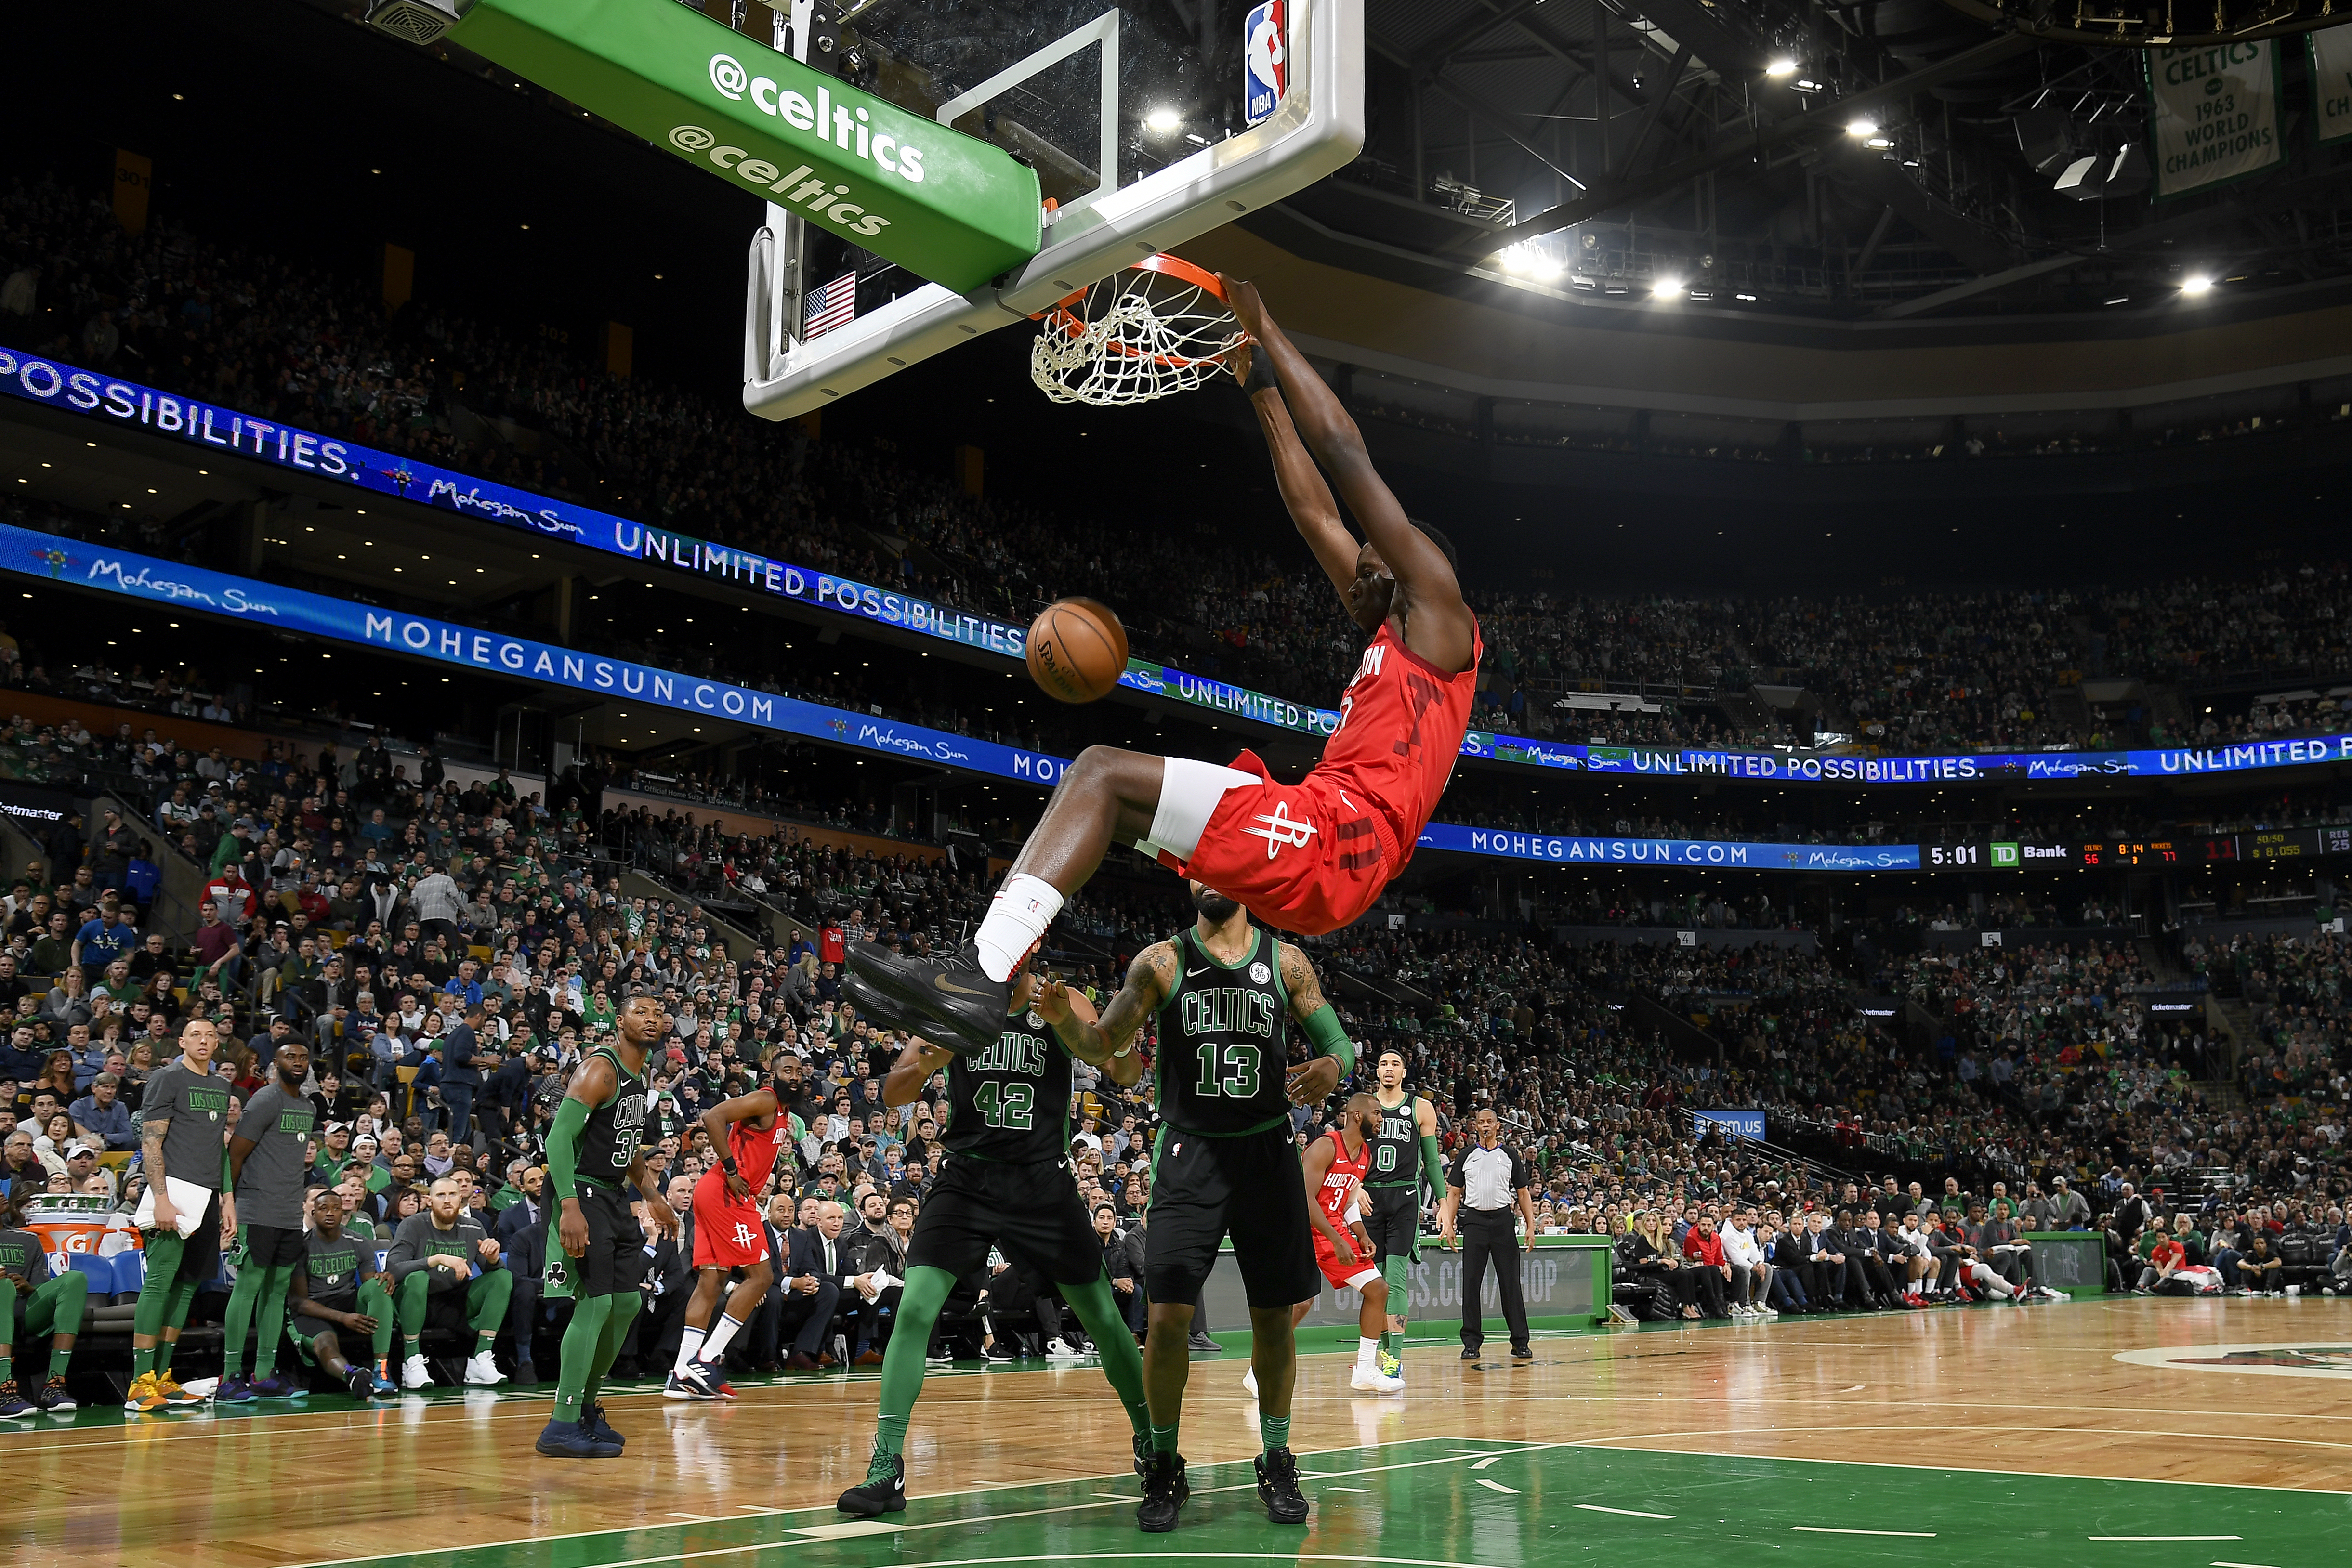 Houston Rockets v Boston Celtics